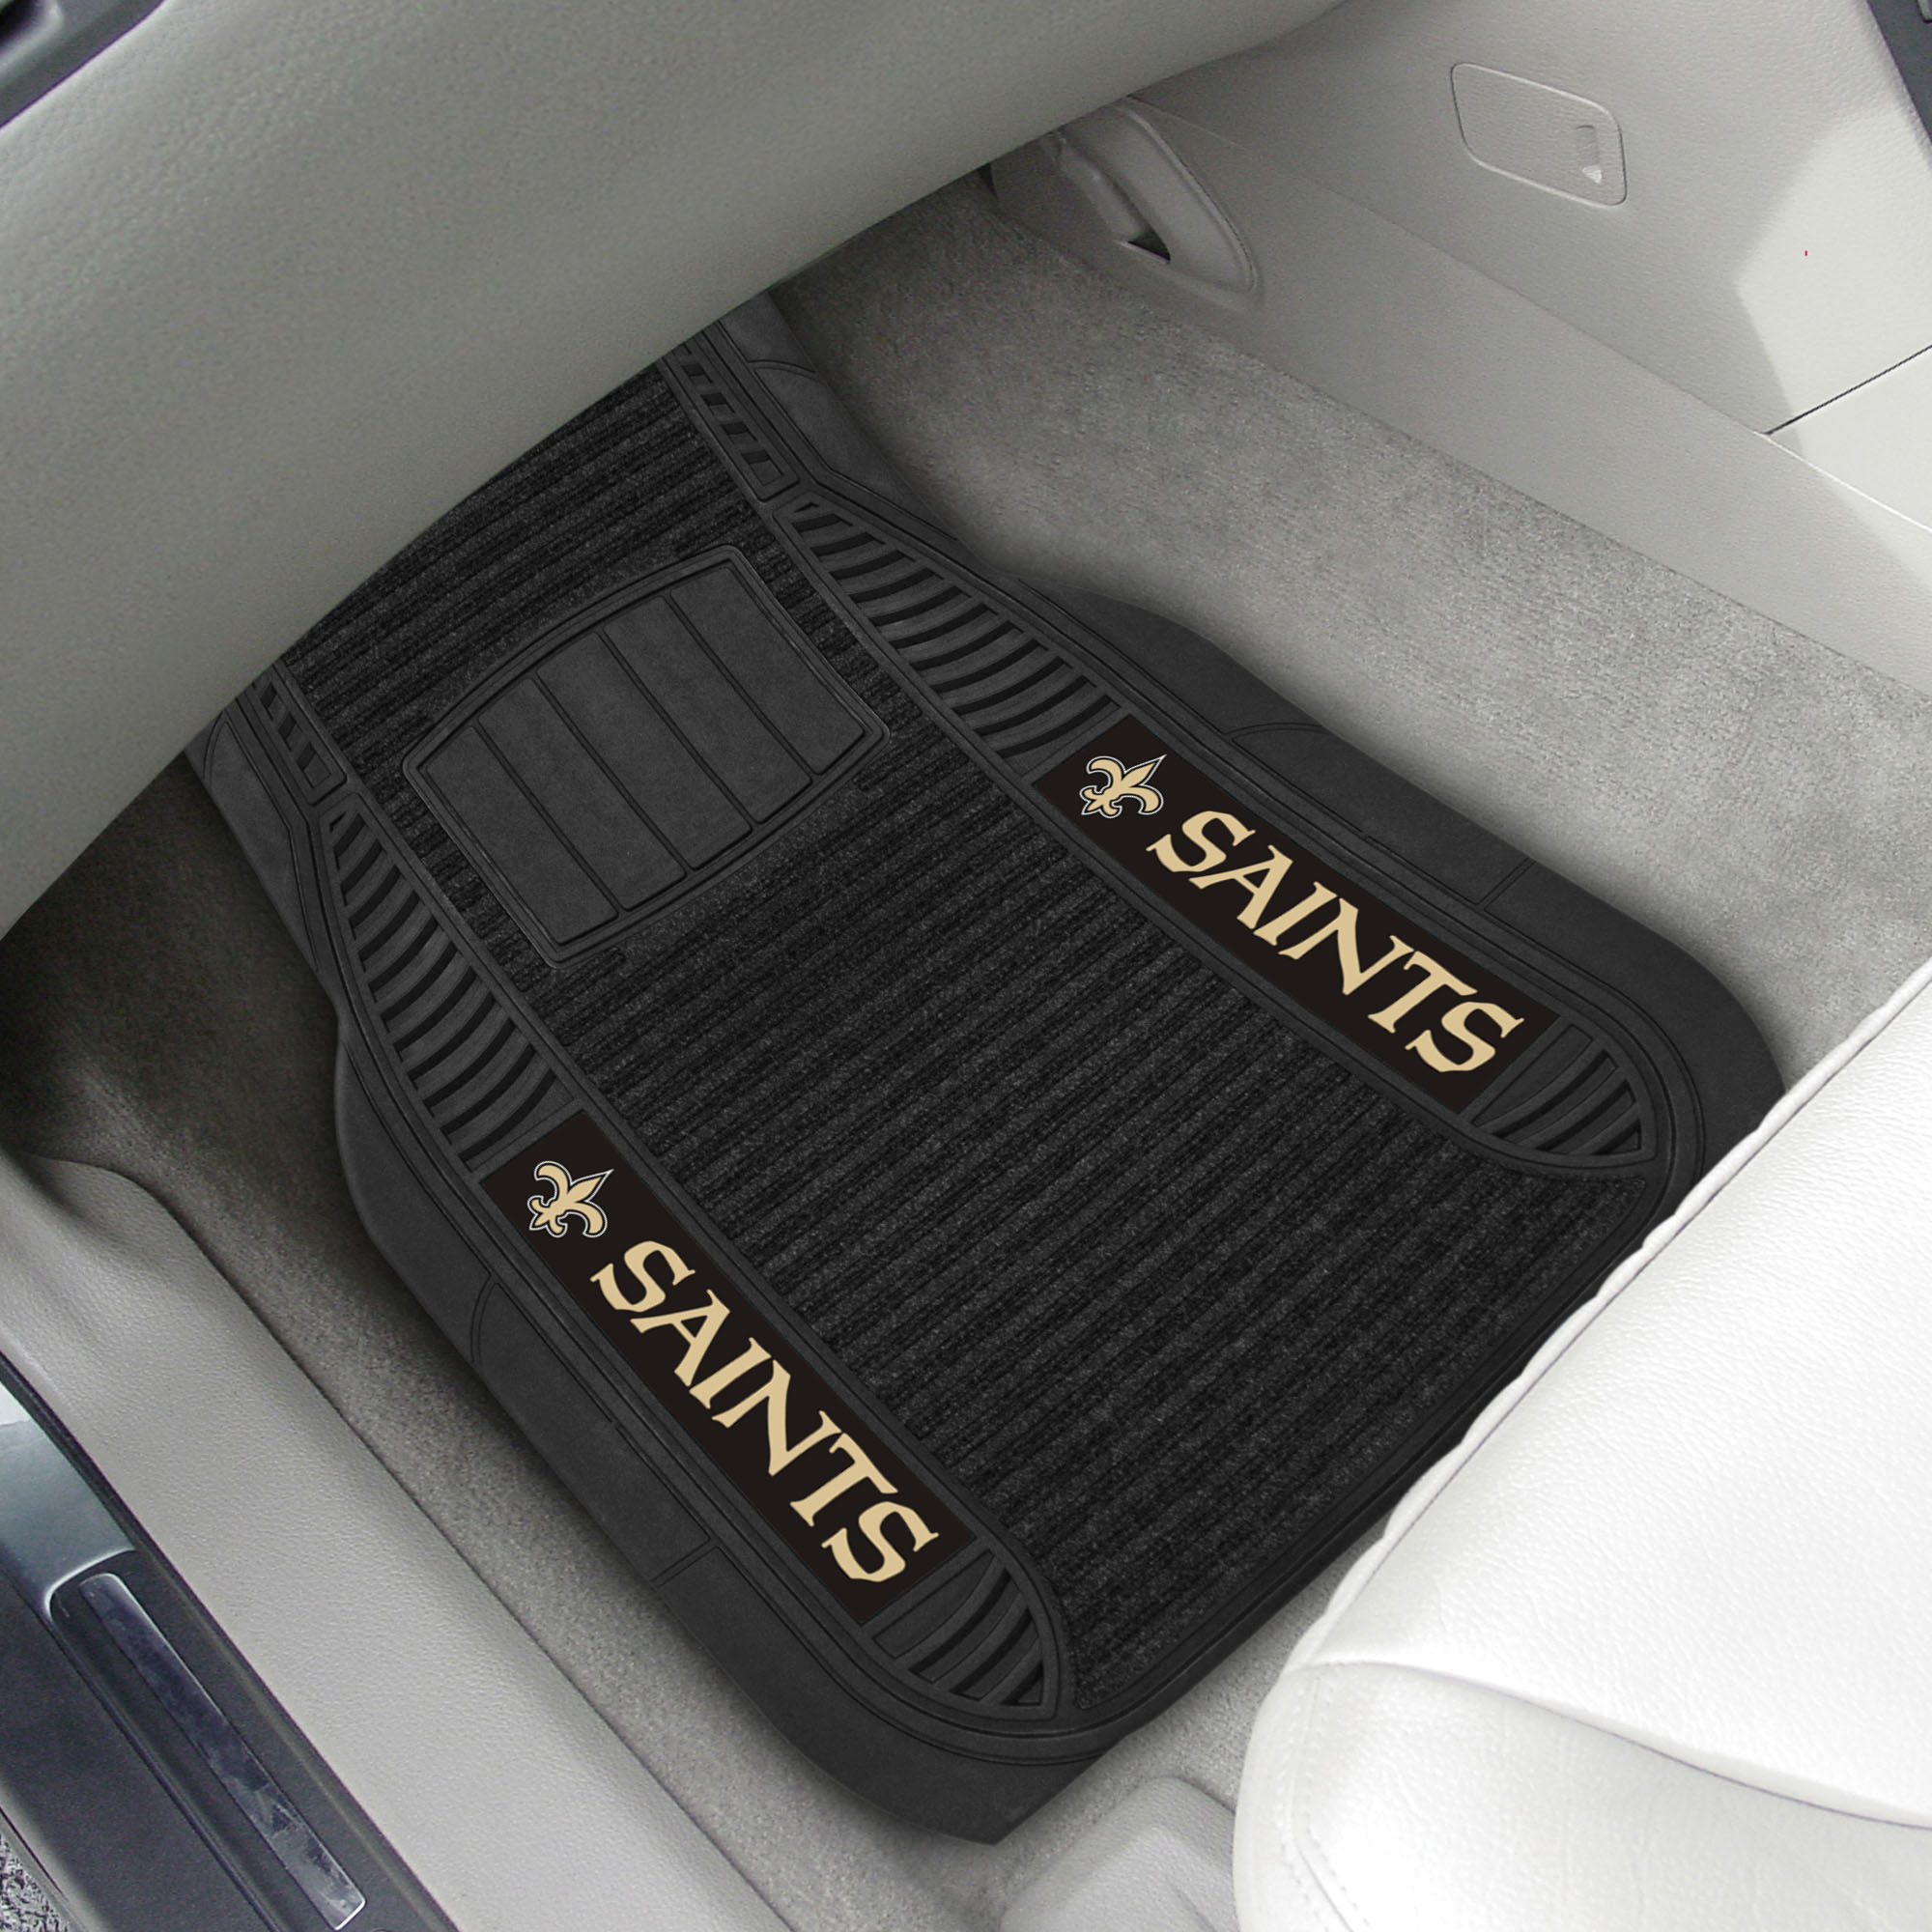 New Orleans Saints Deluxe Car Mat Set â€“ Vinyl & Carpet